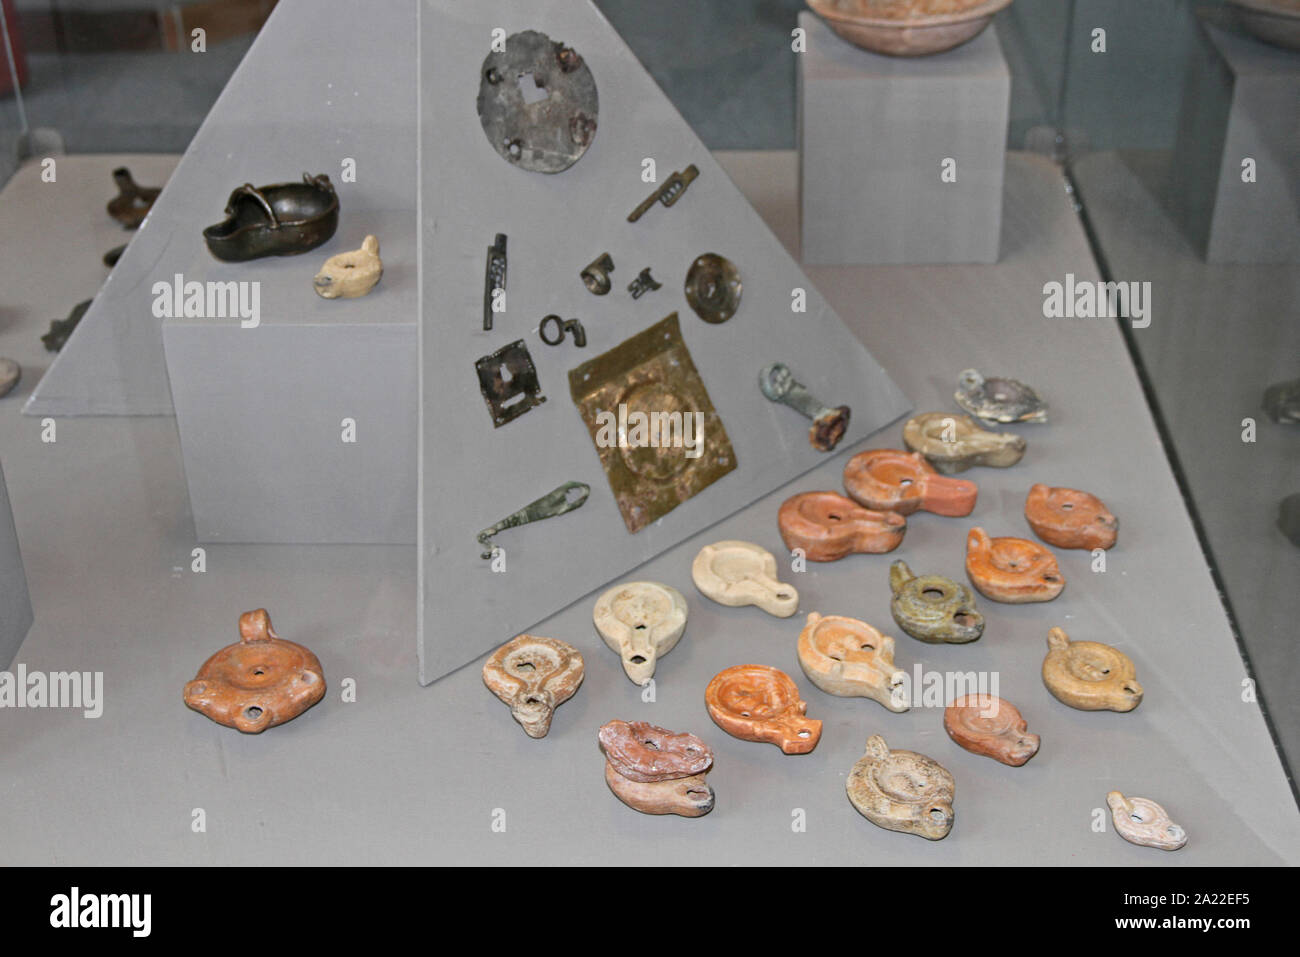 Sammlung von tonlampen und Metall Verzierungen und Messer in Glas Gehäuse an das Nationale Archäologische Museum Djerdap, Kladovo, Serbien angezeigt. Stockfoto